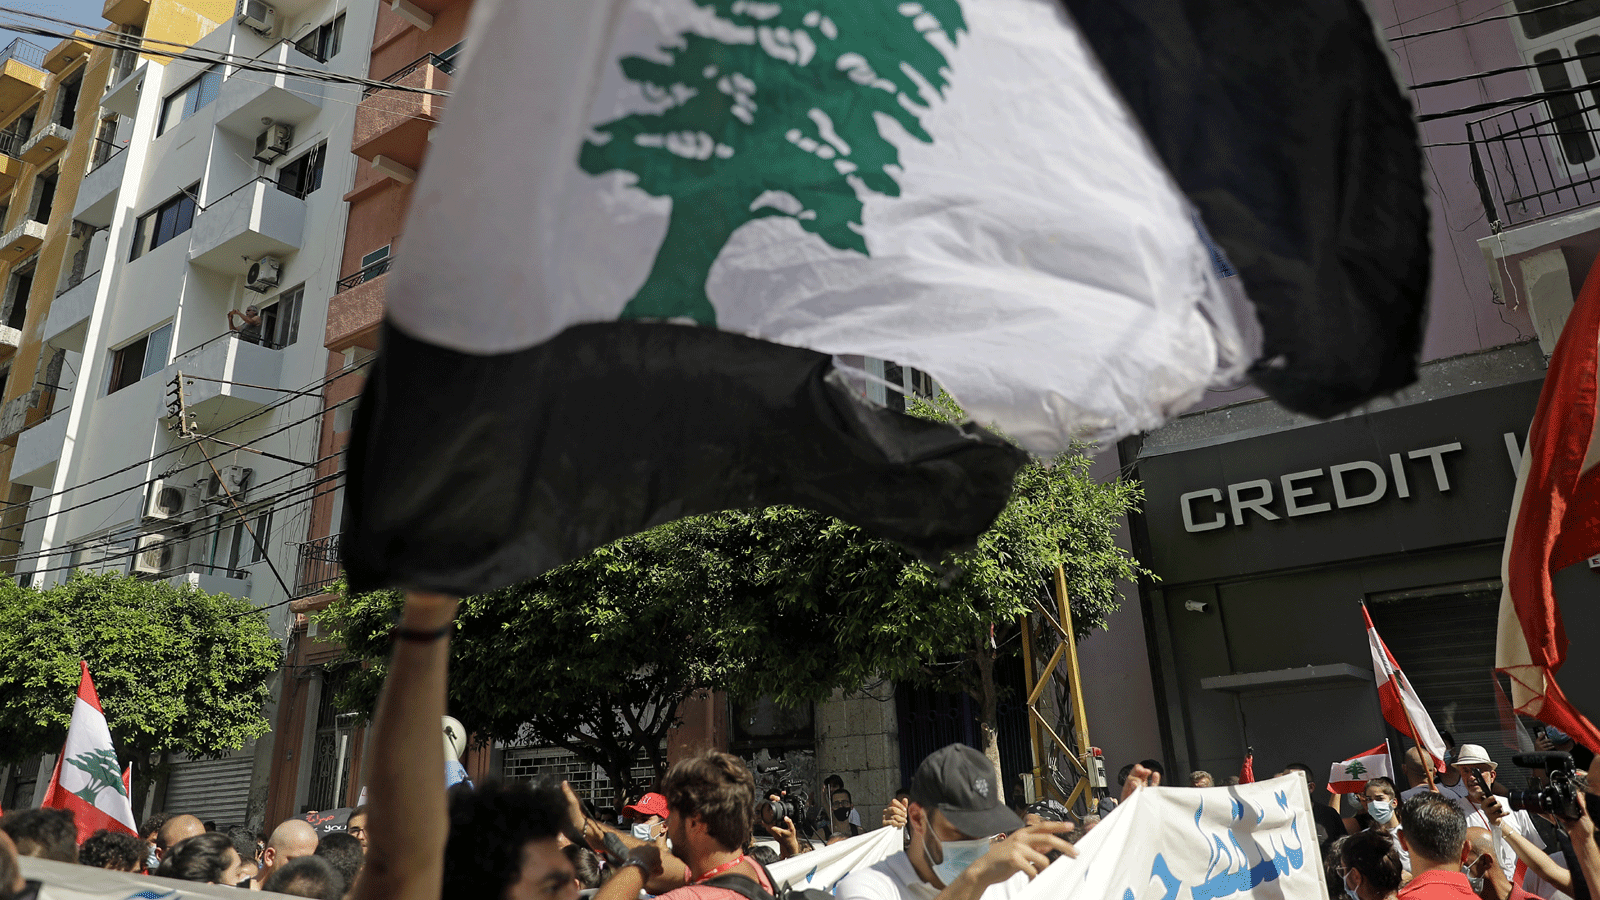 متظاهرون يرفعون الأعلام اللبنانية في حي الجميزة وهم يتجهون نحو ميناء العاصمة اللبنانية. 4 آب/أغسطس 2021